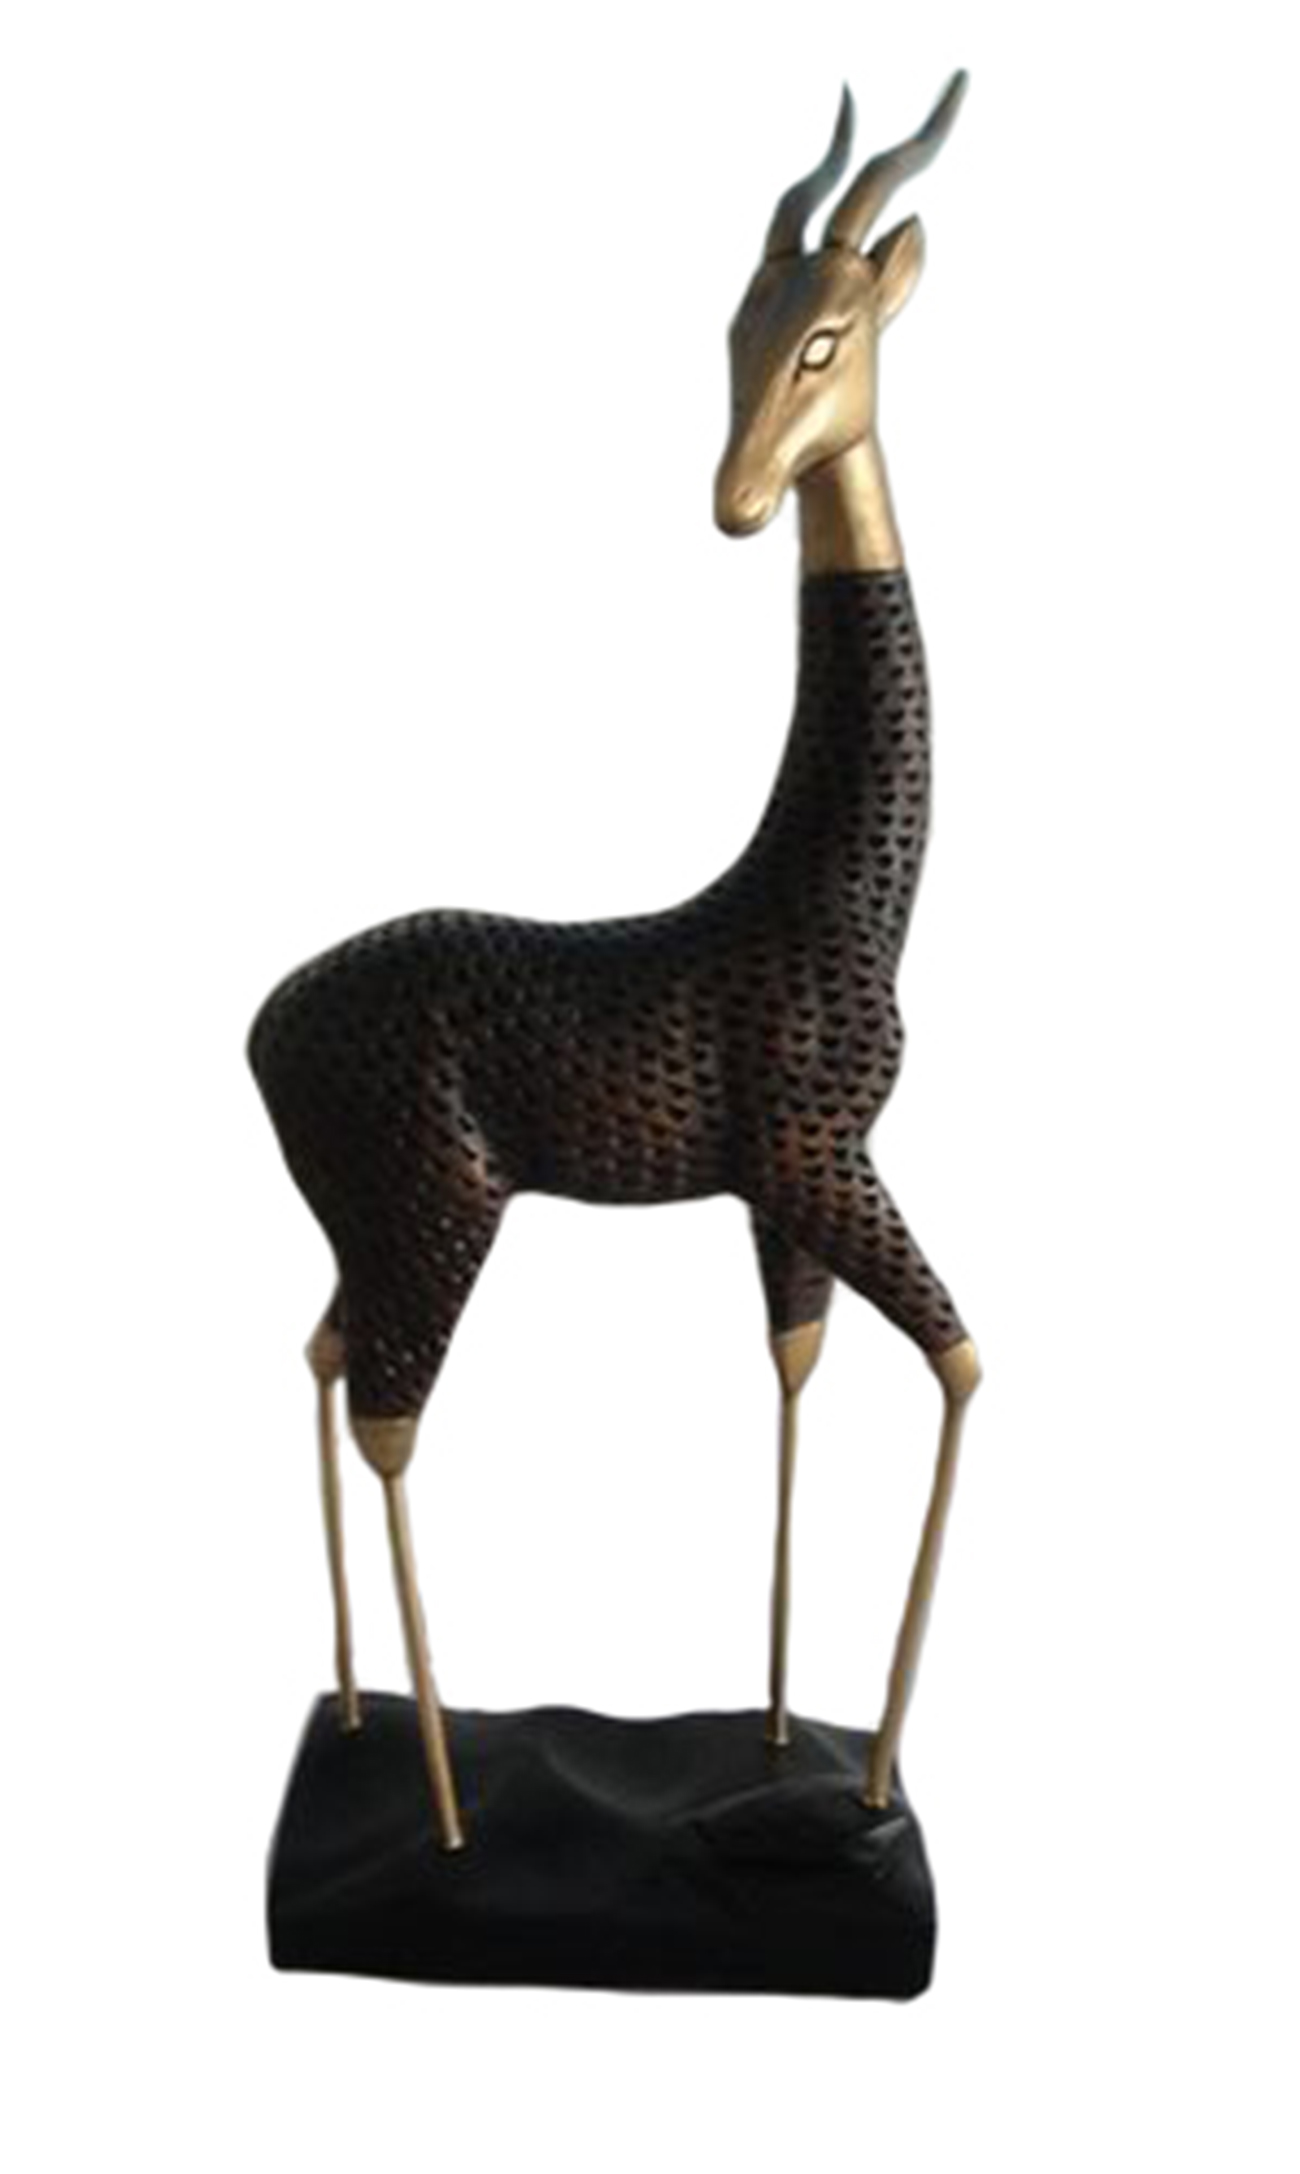 Sagebrook Home modern gazelle figurine